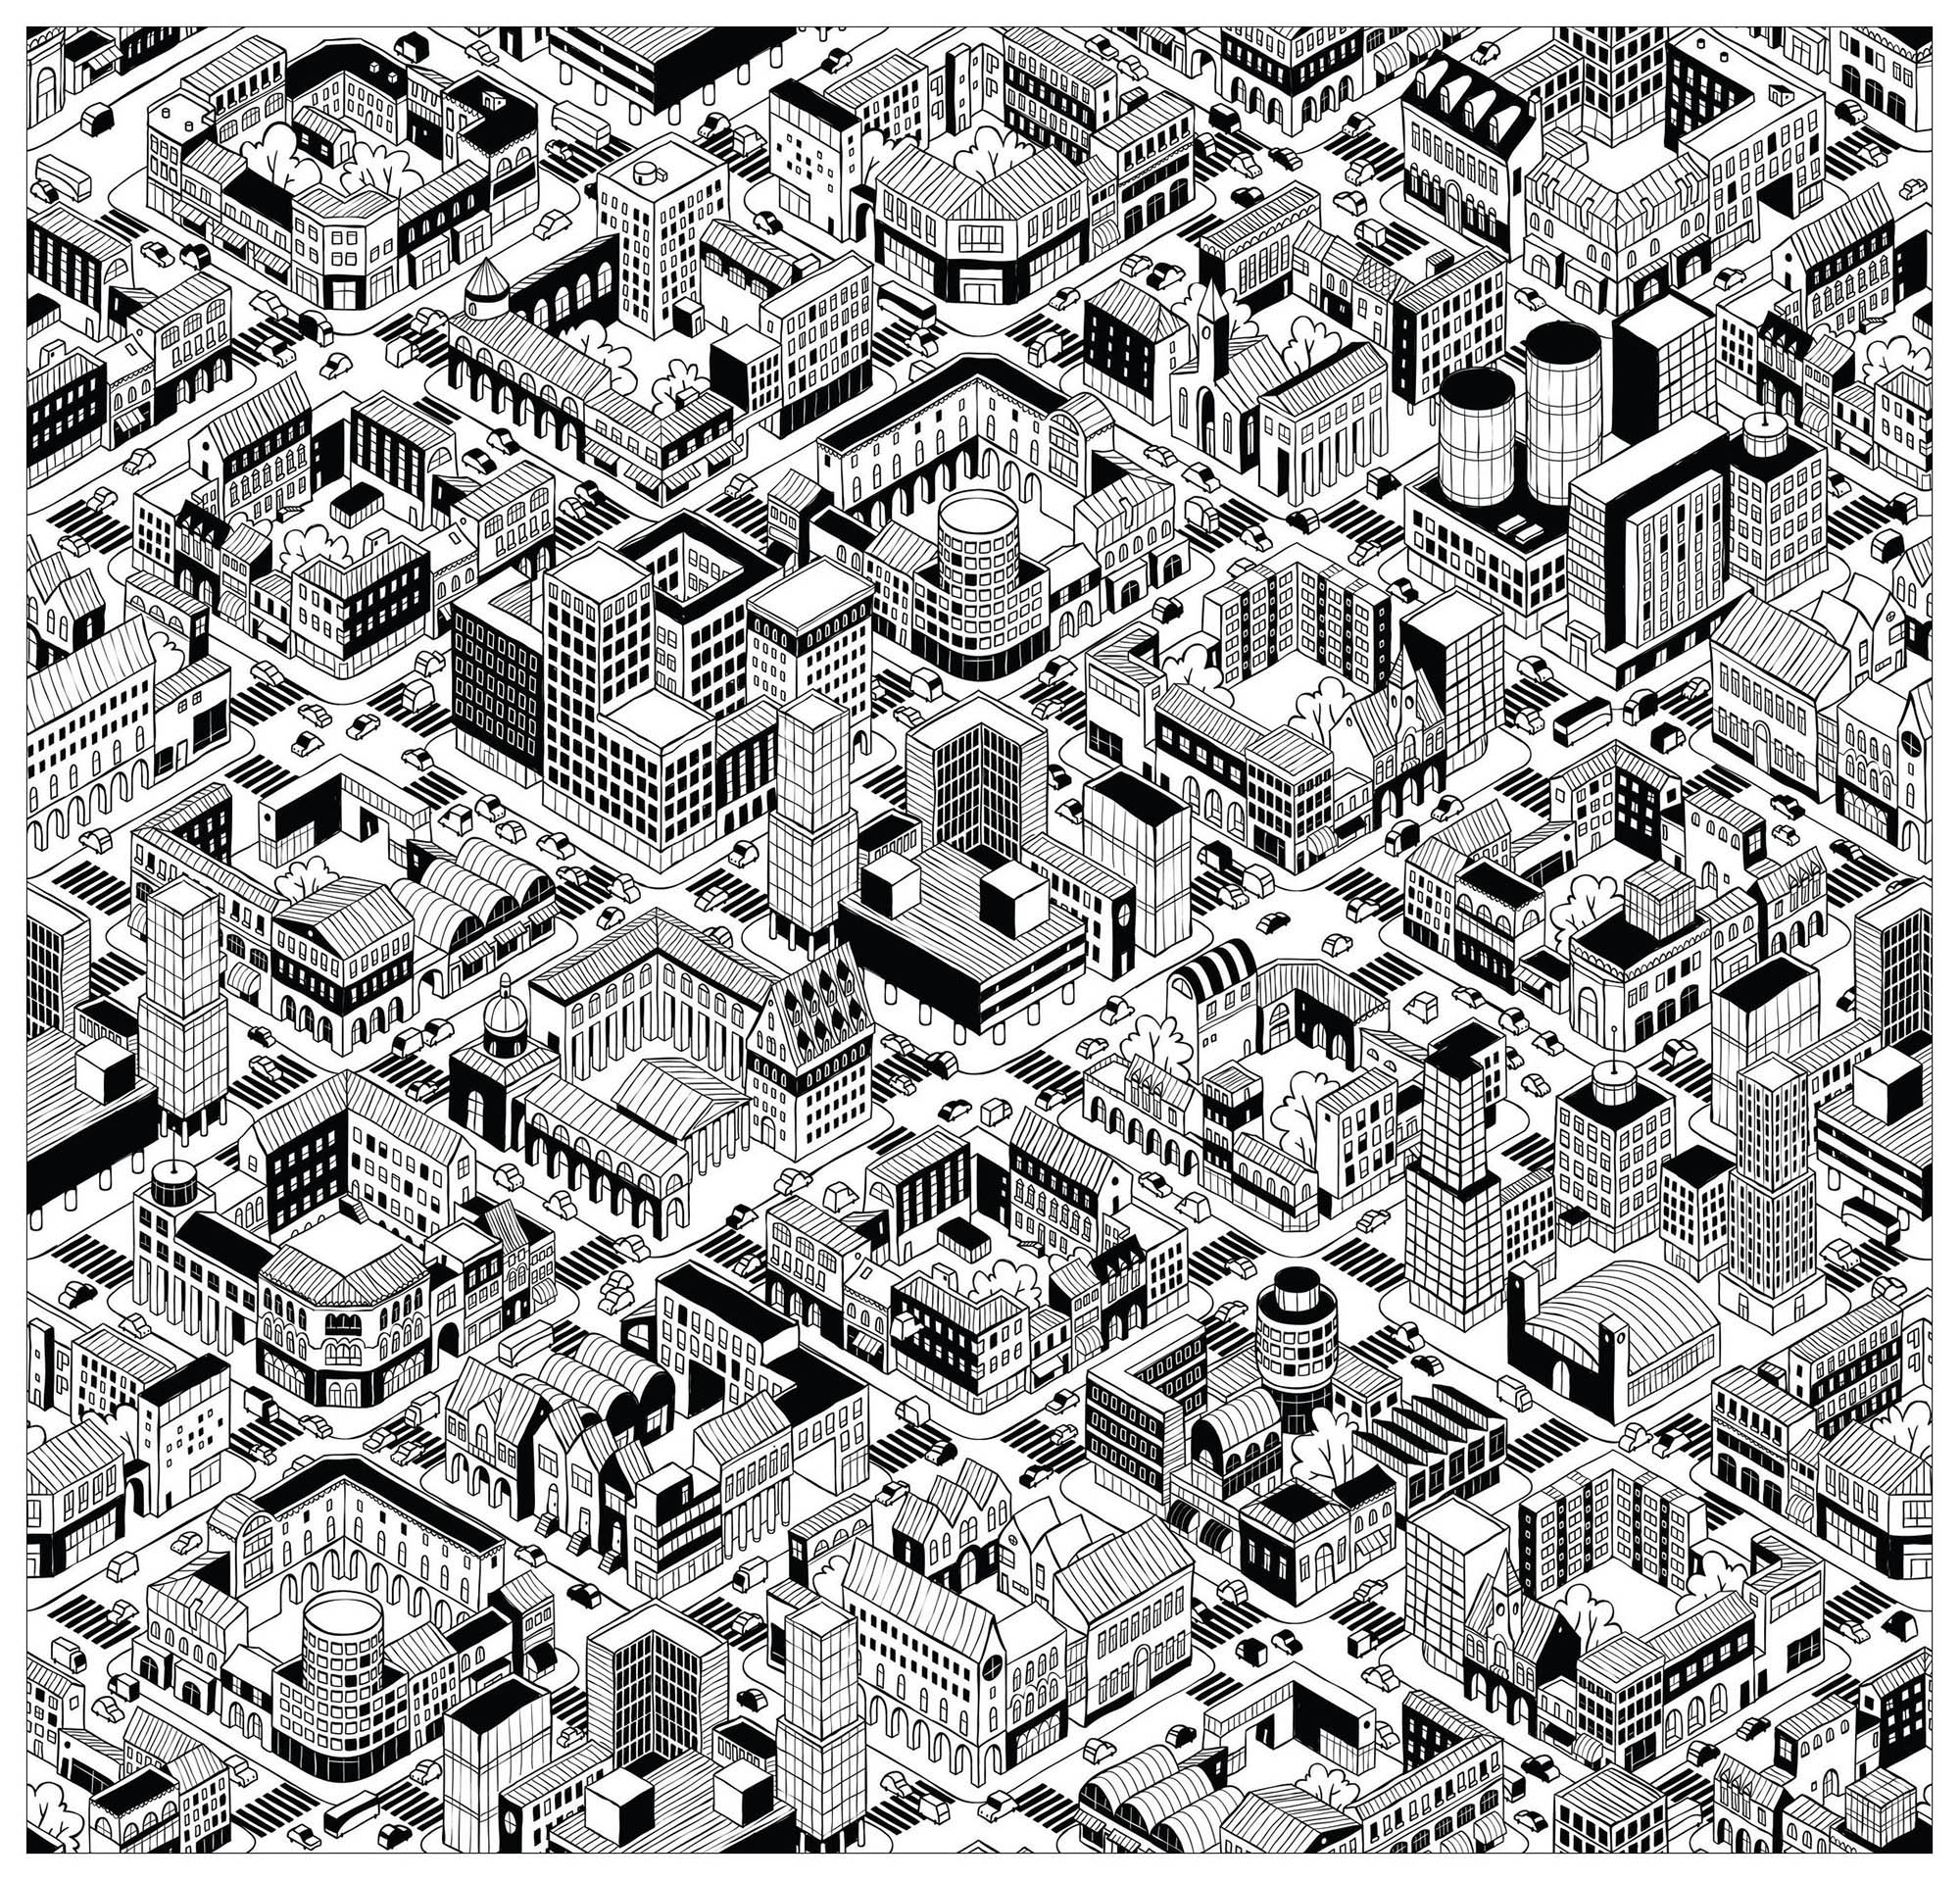 Colora esta cidade que parece ter sido criada no jogo de vídeo Sim City! Edifícios incríveis: todos diferentes e únicos